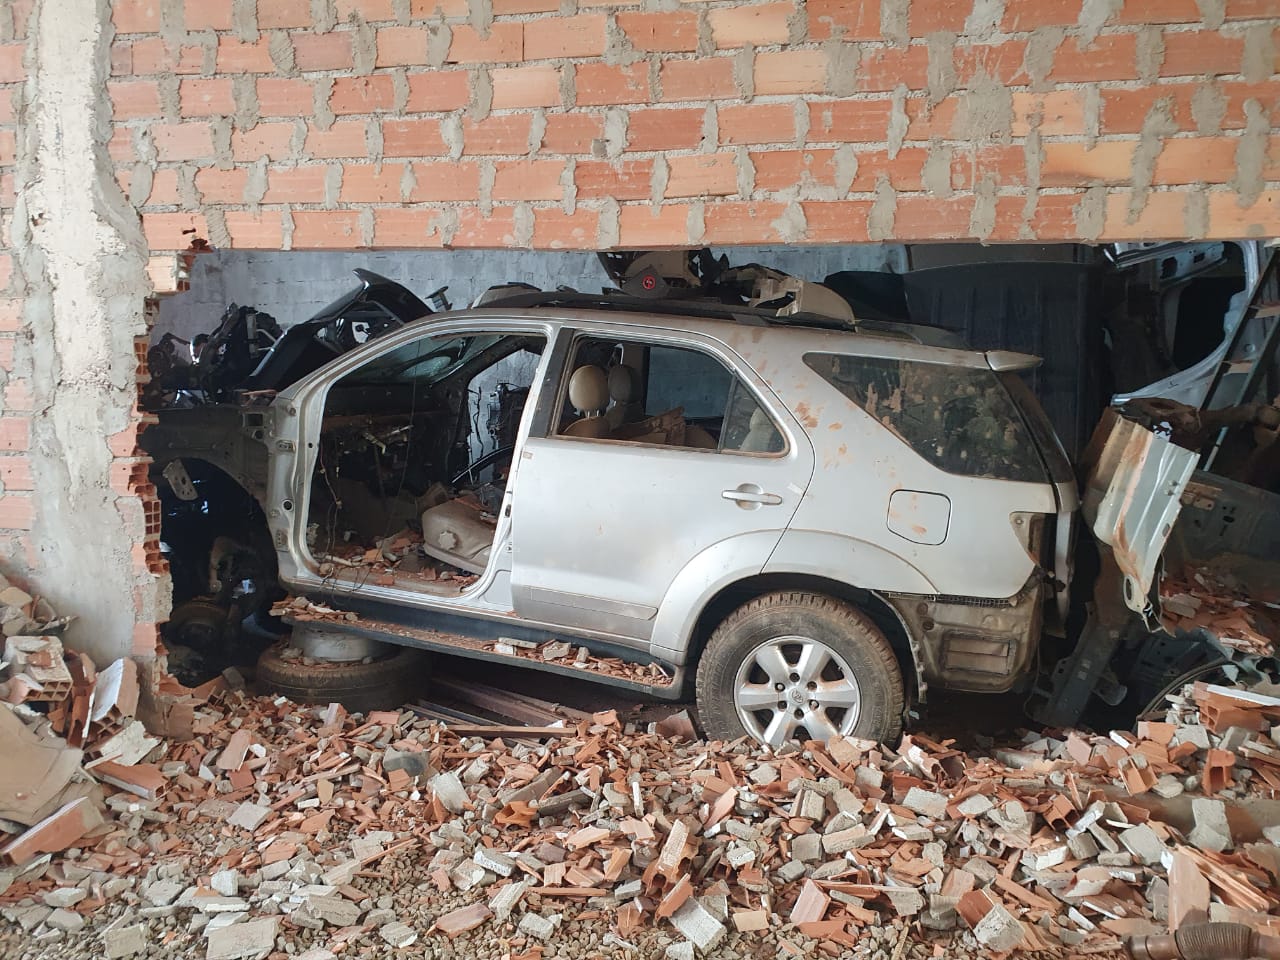 Desmanche de veículos roubados foi encontrado em chácara ligada a lojistas da Canaã (Foto: divulgação/PC)